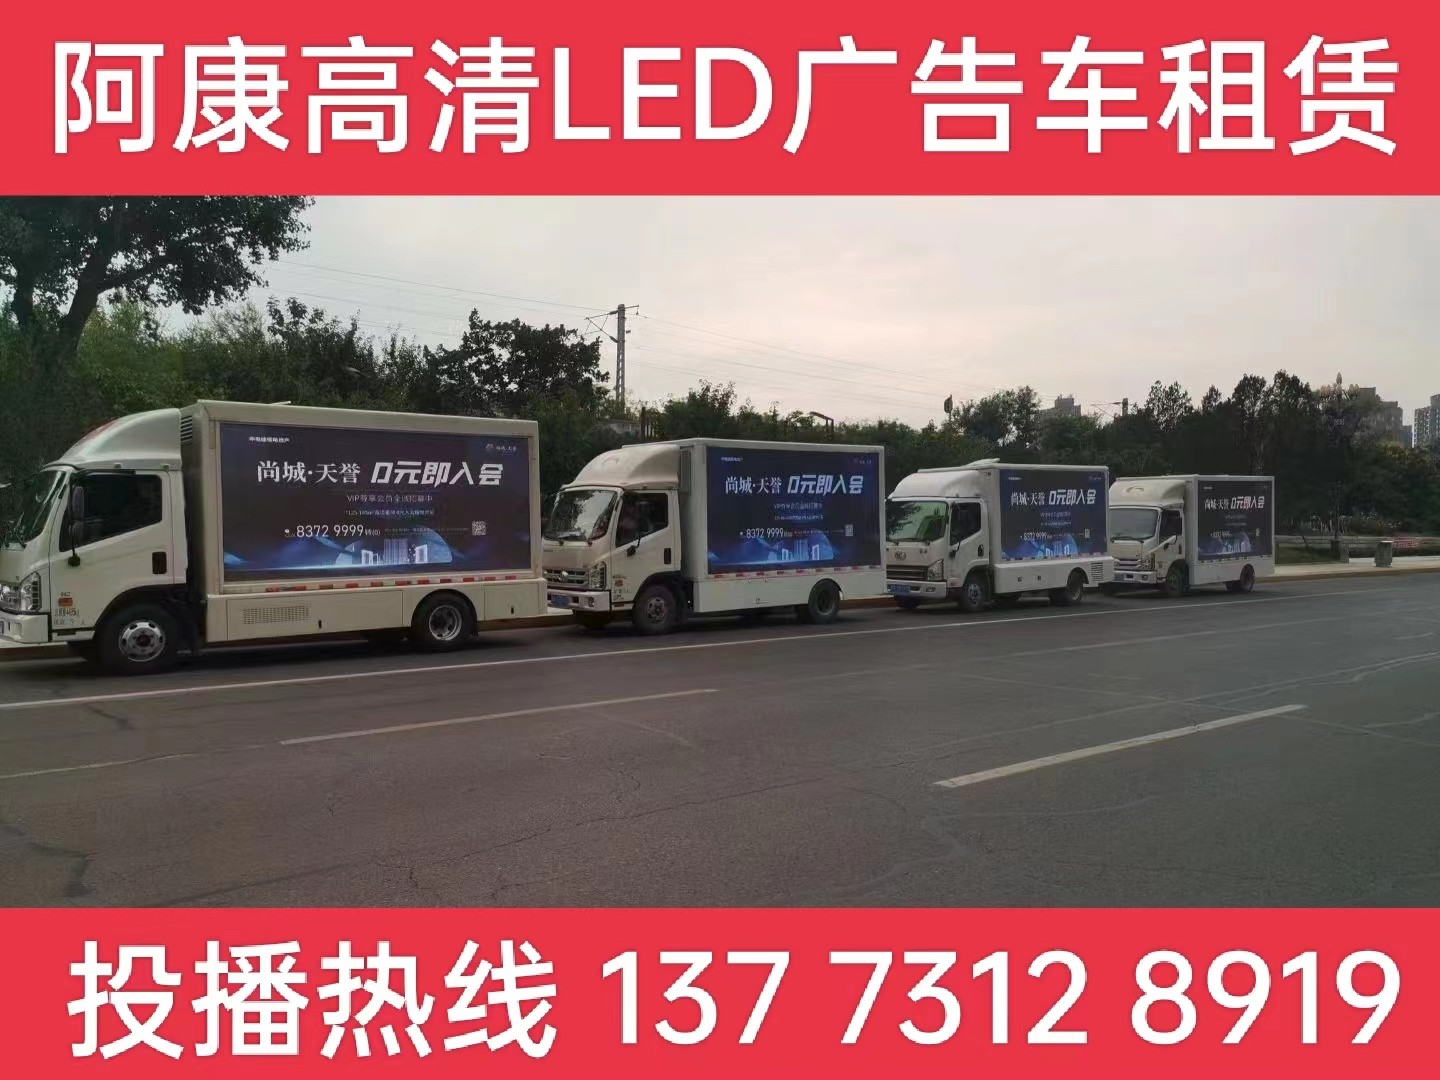 江宁区LED广告车出租-某房产公司效果展示